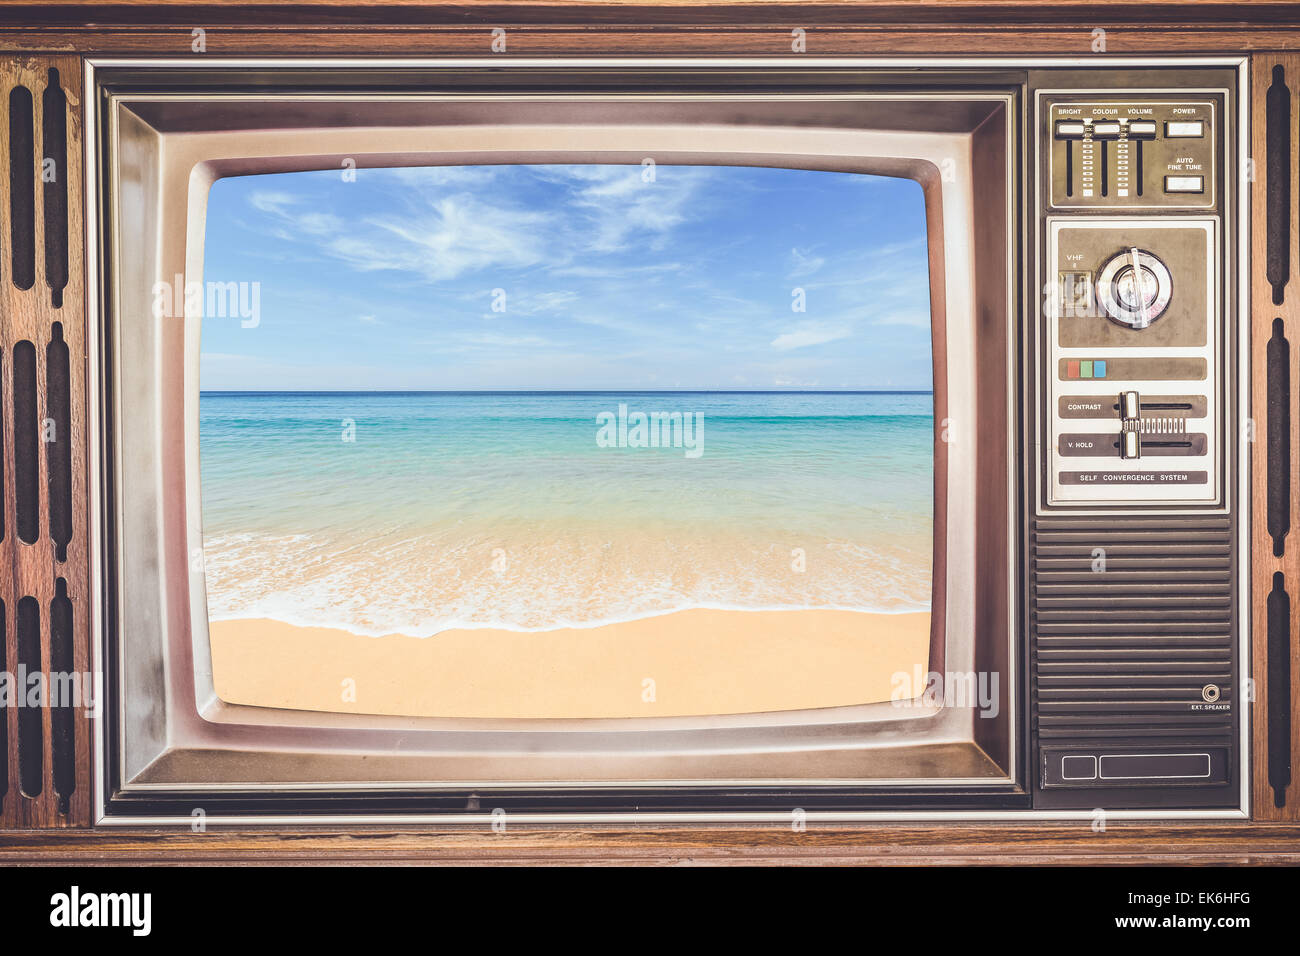 Vecchia TV con mare tropicale sullo schermo, retro per effetto del filtro Foto Stock